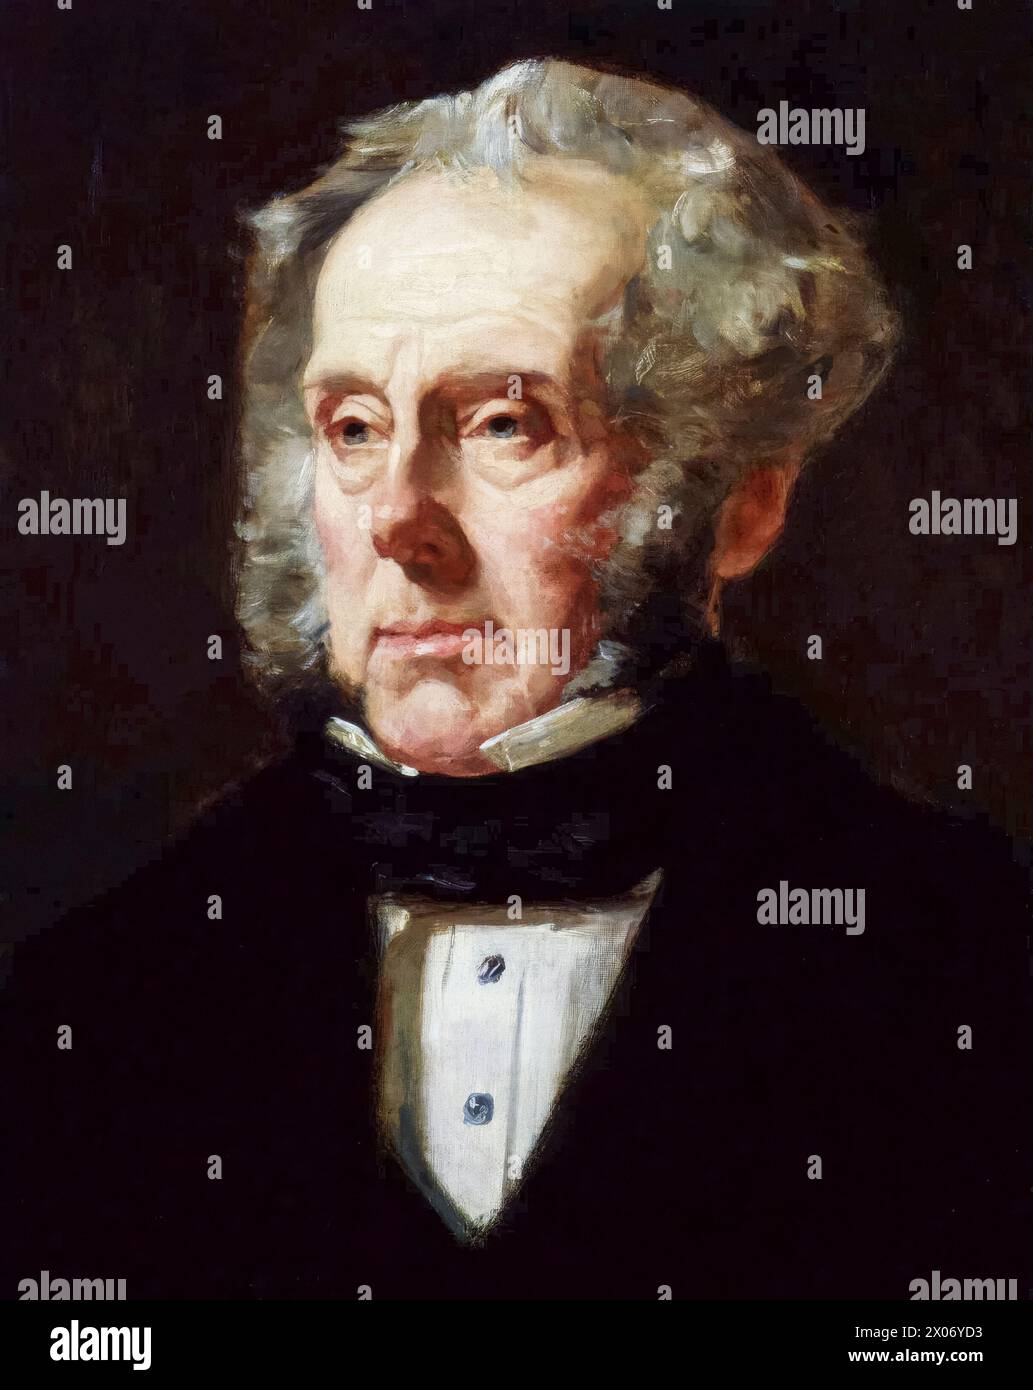 Henry John Temple, 3e vicomte Palmerston (1784-1865) connu sous le nom de «Lord Palmerston», deux fois premier ministre du Royaume-Uni 1855-1858 et 1859-1865, portrait peint à l'huile sur toile par Francis Cruikshank, 1855-1859 Banque D'Images